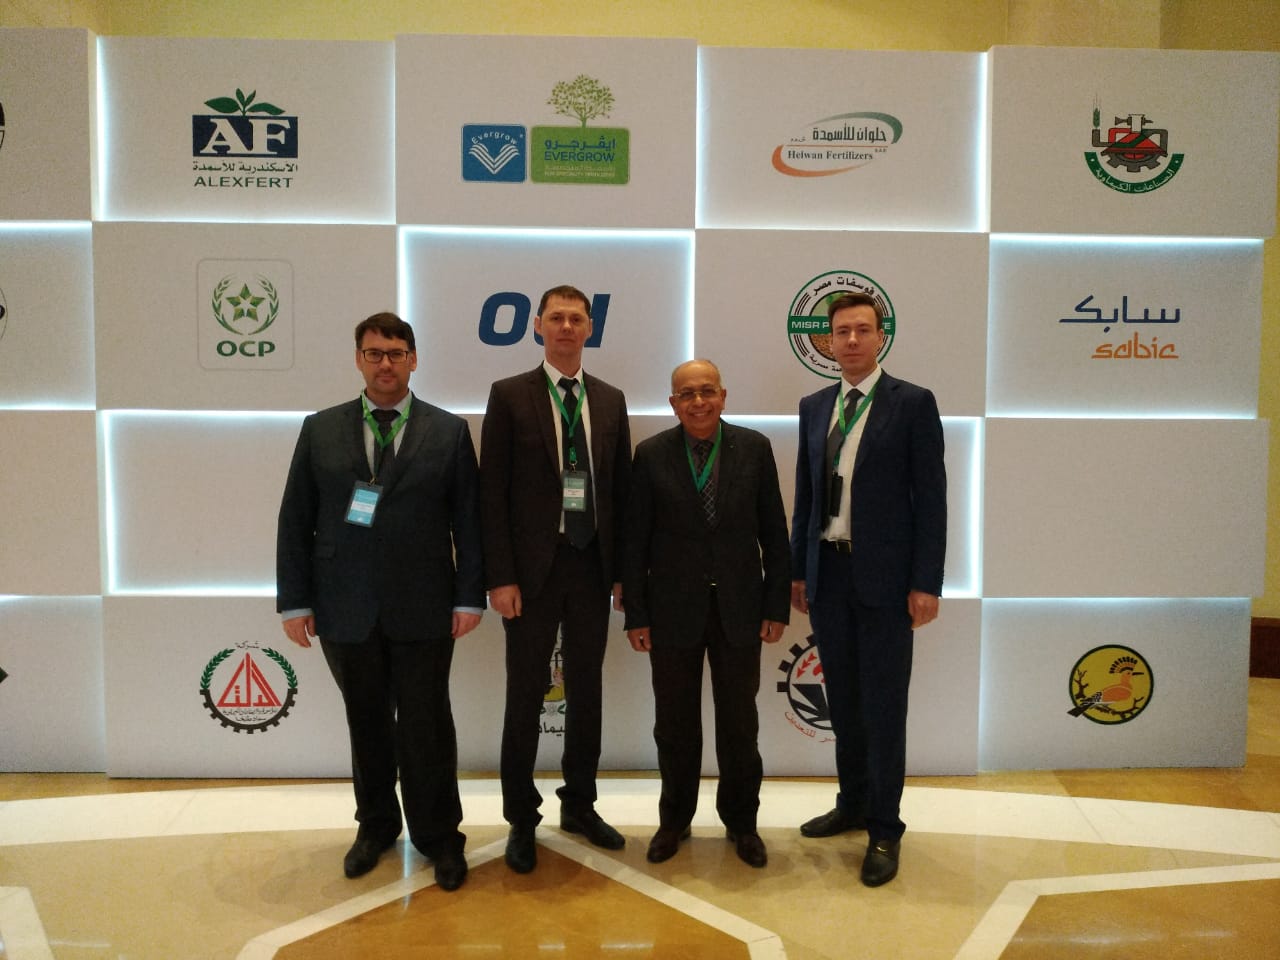 12-14 февраля 2019 г. делегация ОАО «НИИК» приняла участие в форуме арабской ассоциации индустрии удобрений AFA в г. Каире, Египет